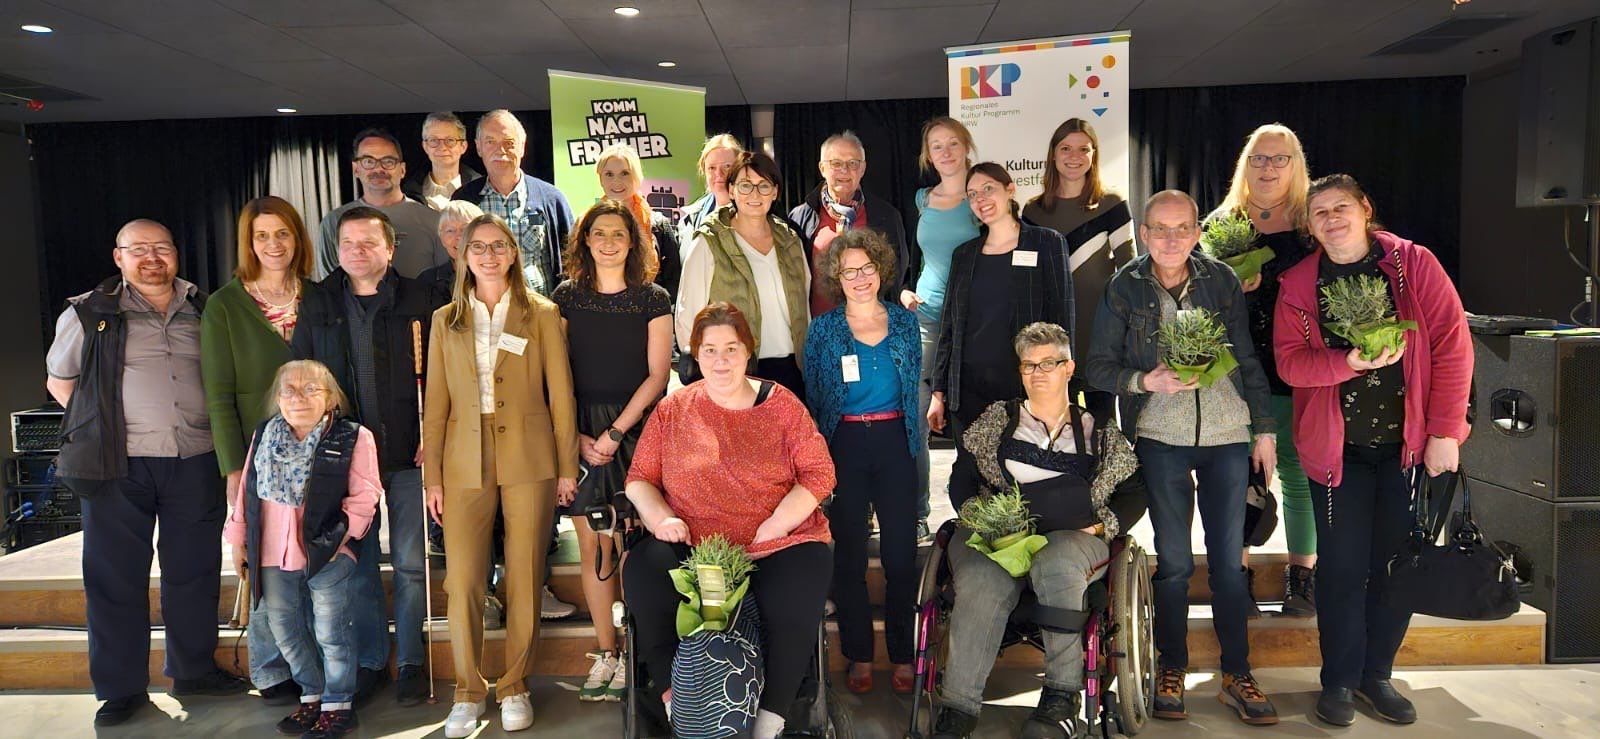 Gruppenfoto der Teilnehmenden des Praxisworkshops. Ungefähr 25 Menschen mit und ohne Behinderung stehen zusammen auf und vor der kleinen Bühnen der OT Grevenbrück.